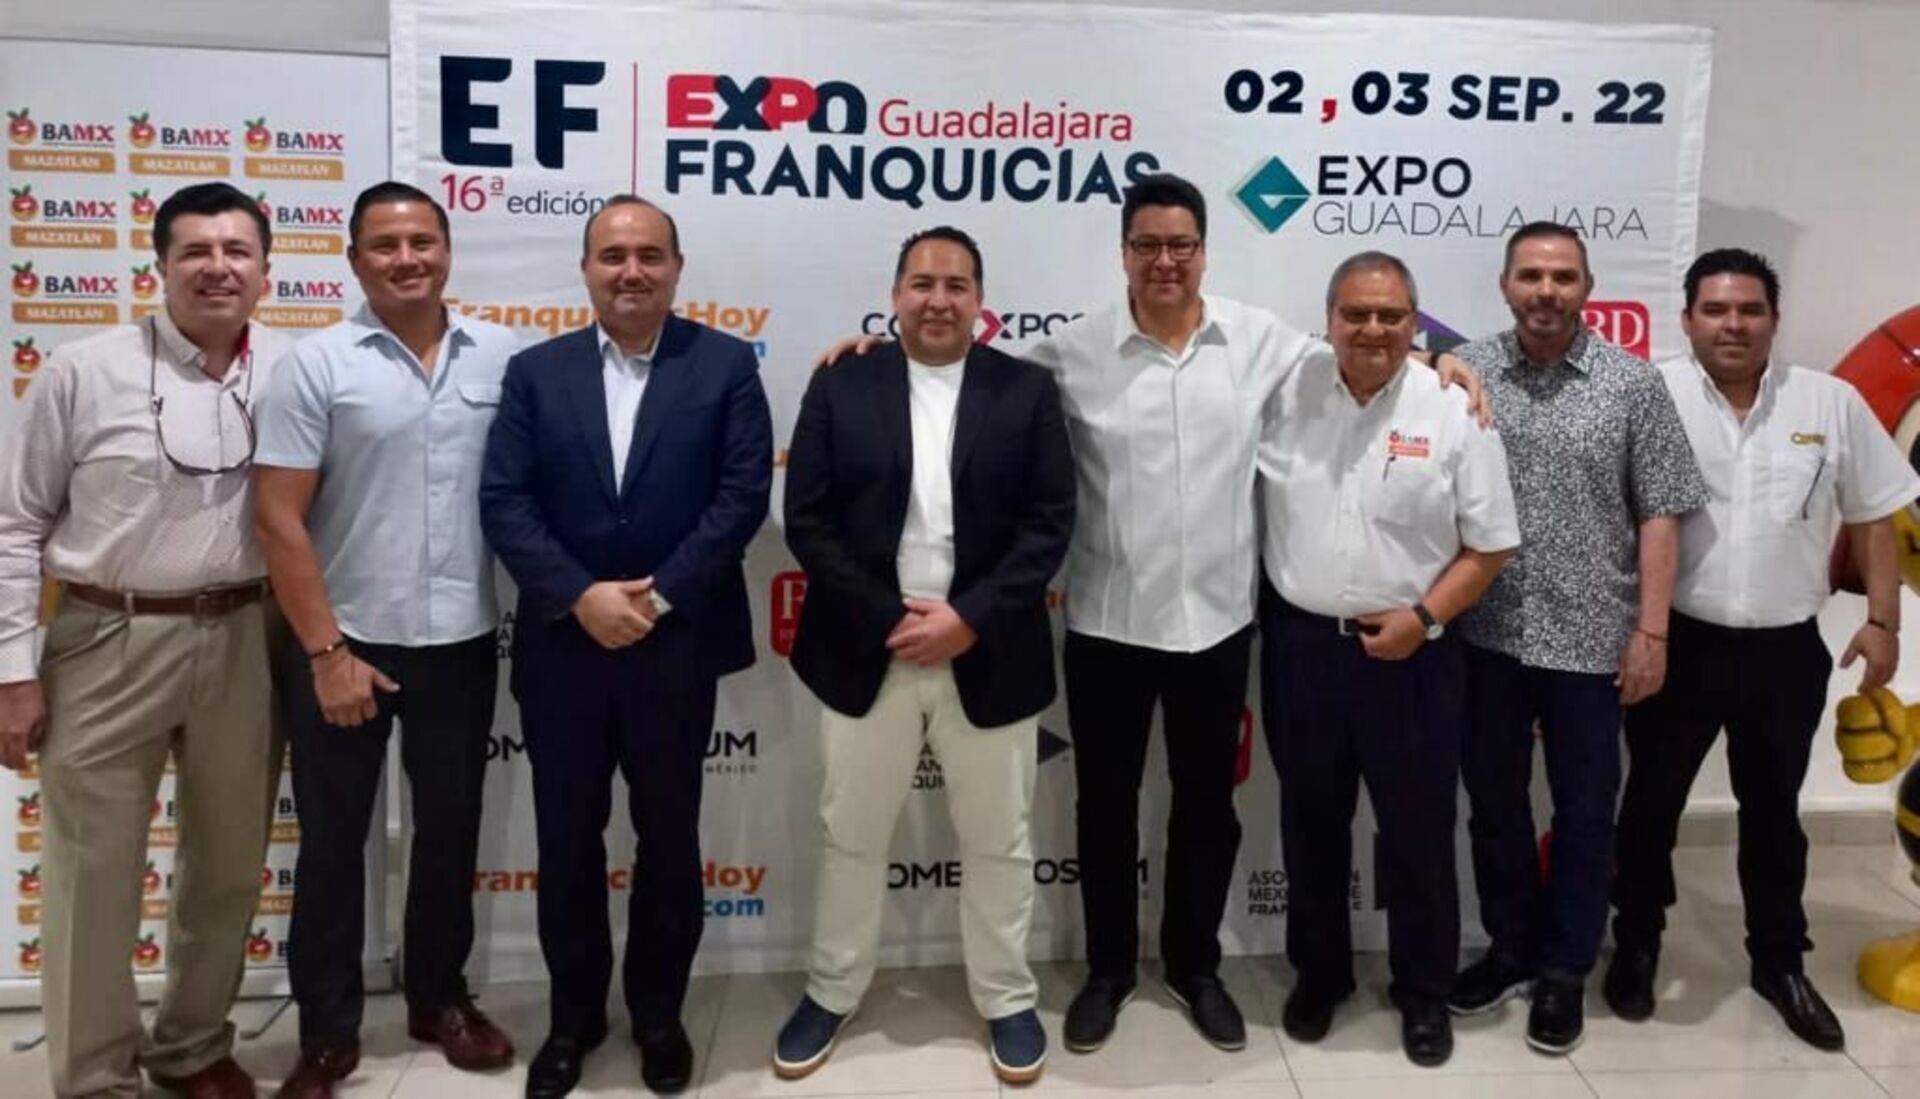 8 días para el arranque de Expo Franquicias Guadalajara 2022: “No te la puedes perder”